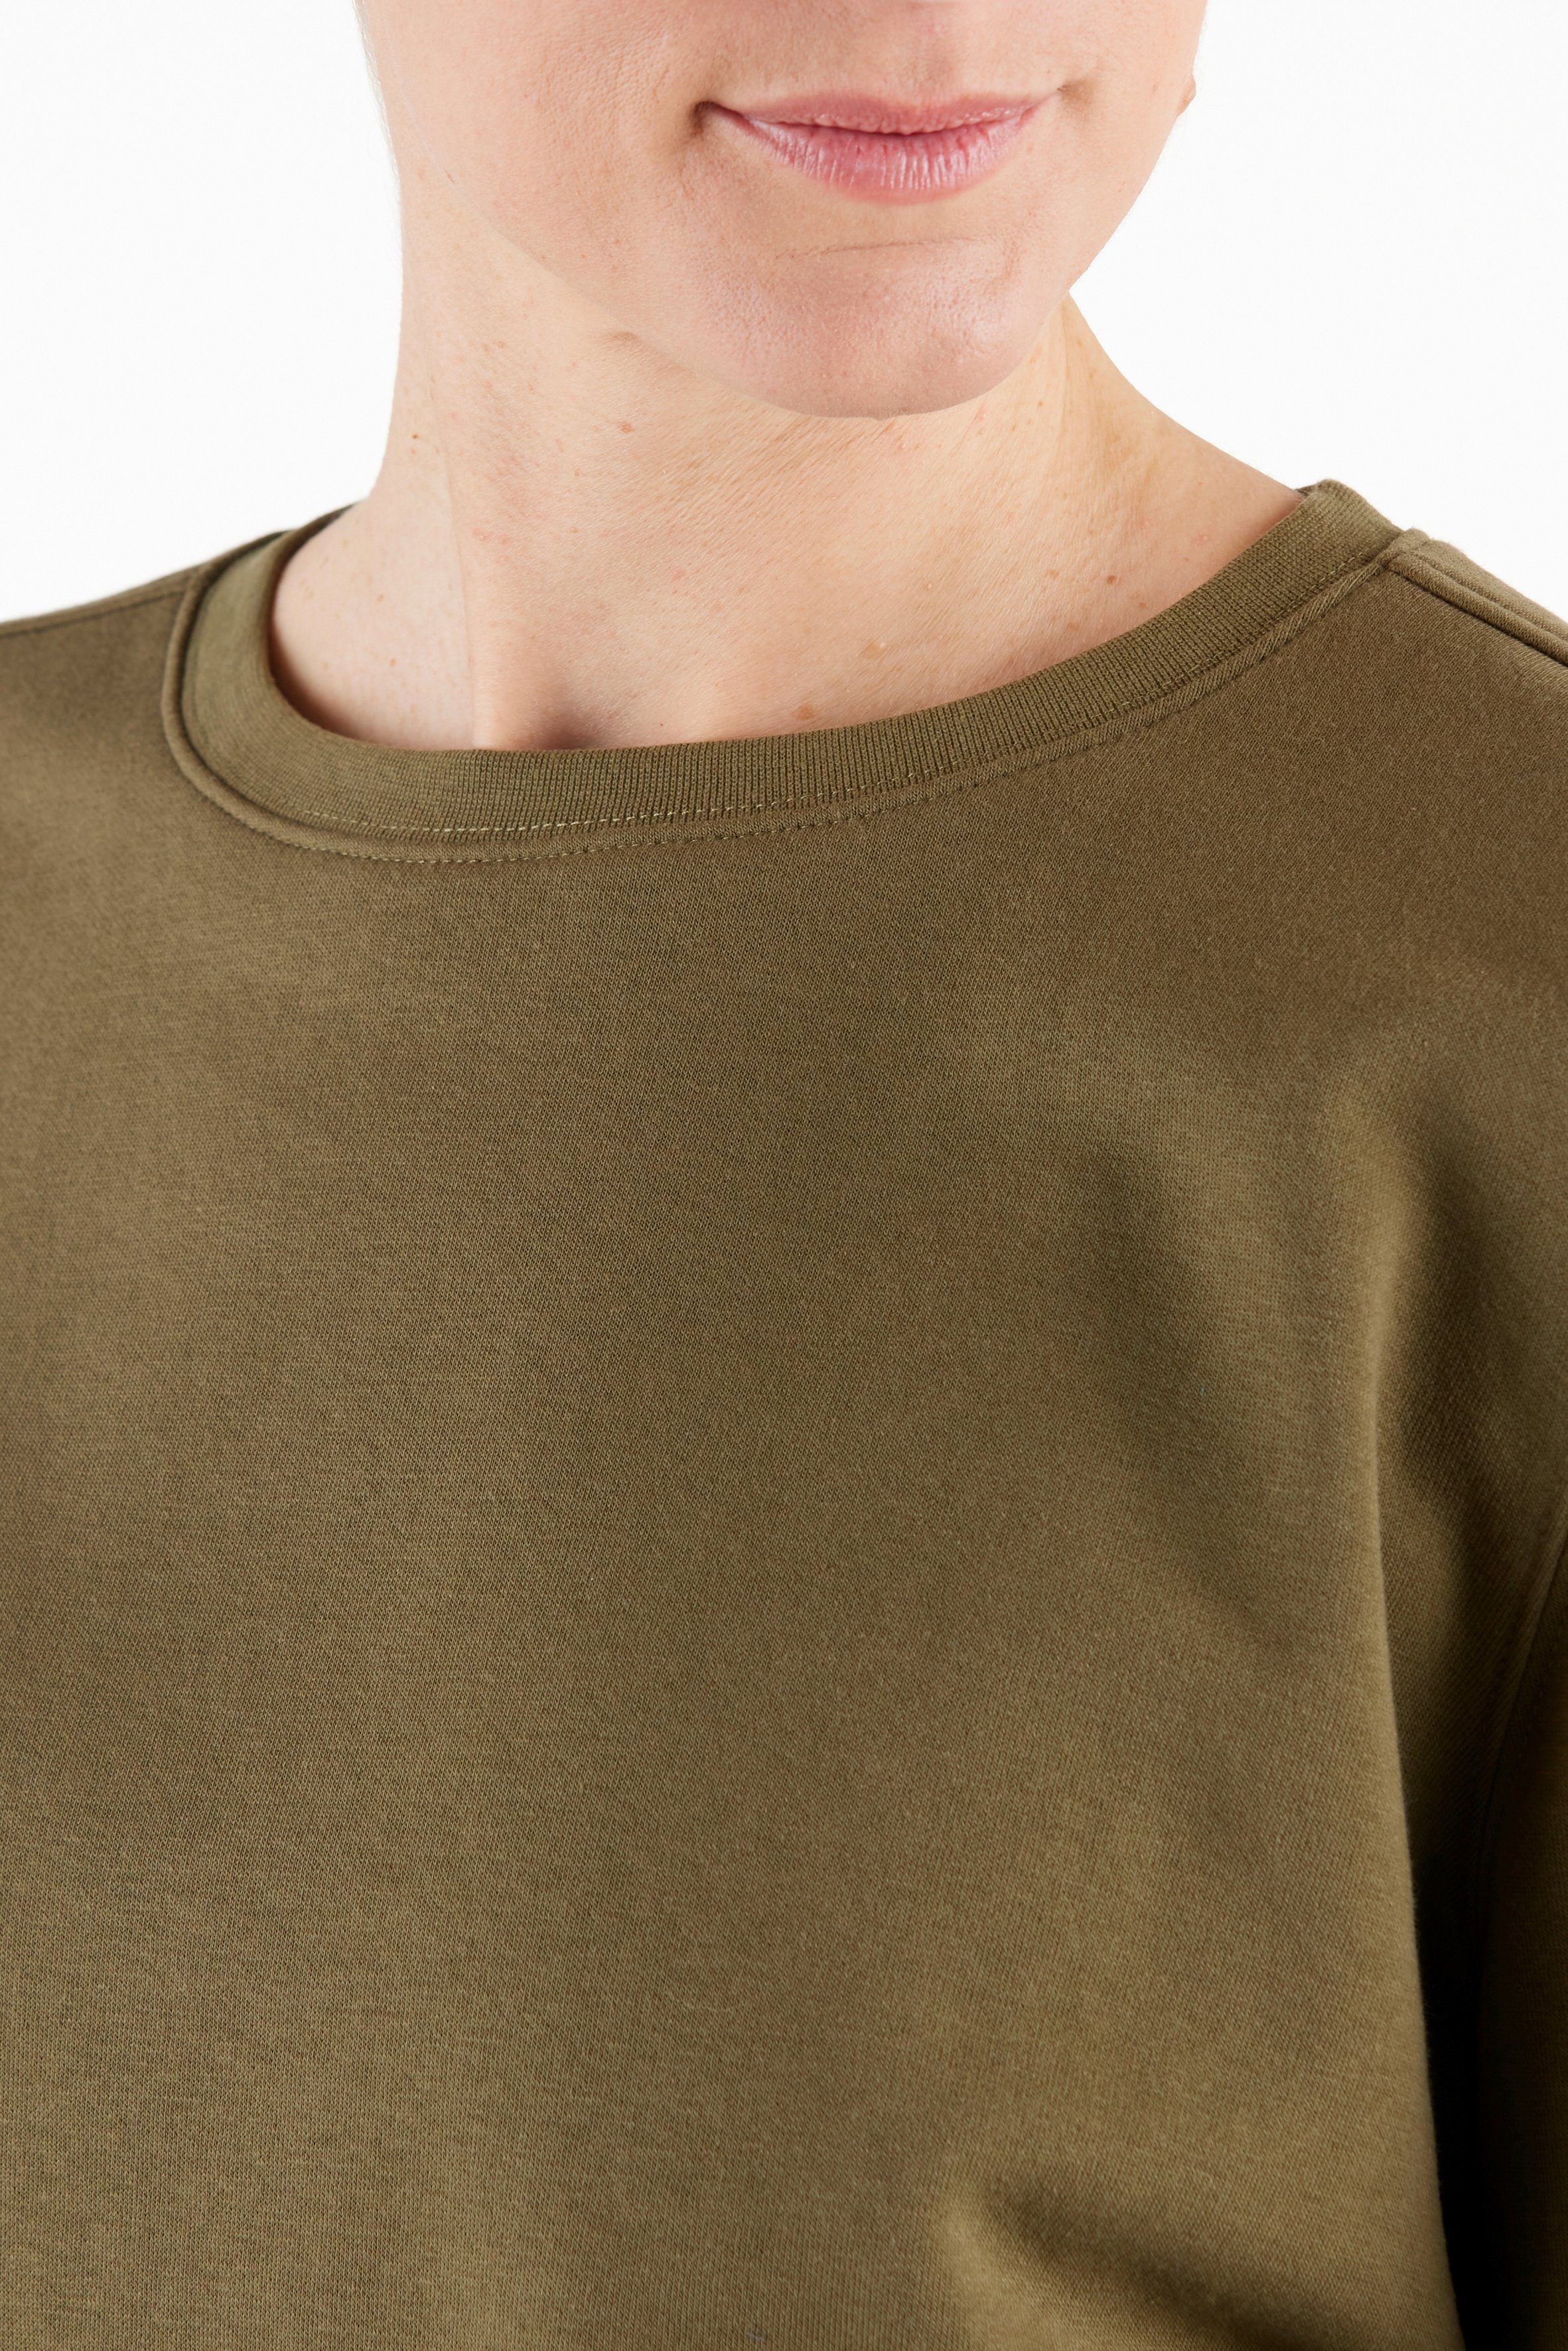 Northern Country Sweatshirt für Damen sich trägt leicht soften locker aus Olive Baumwollmix, Dusty und